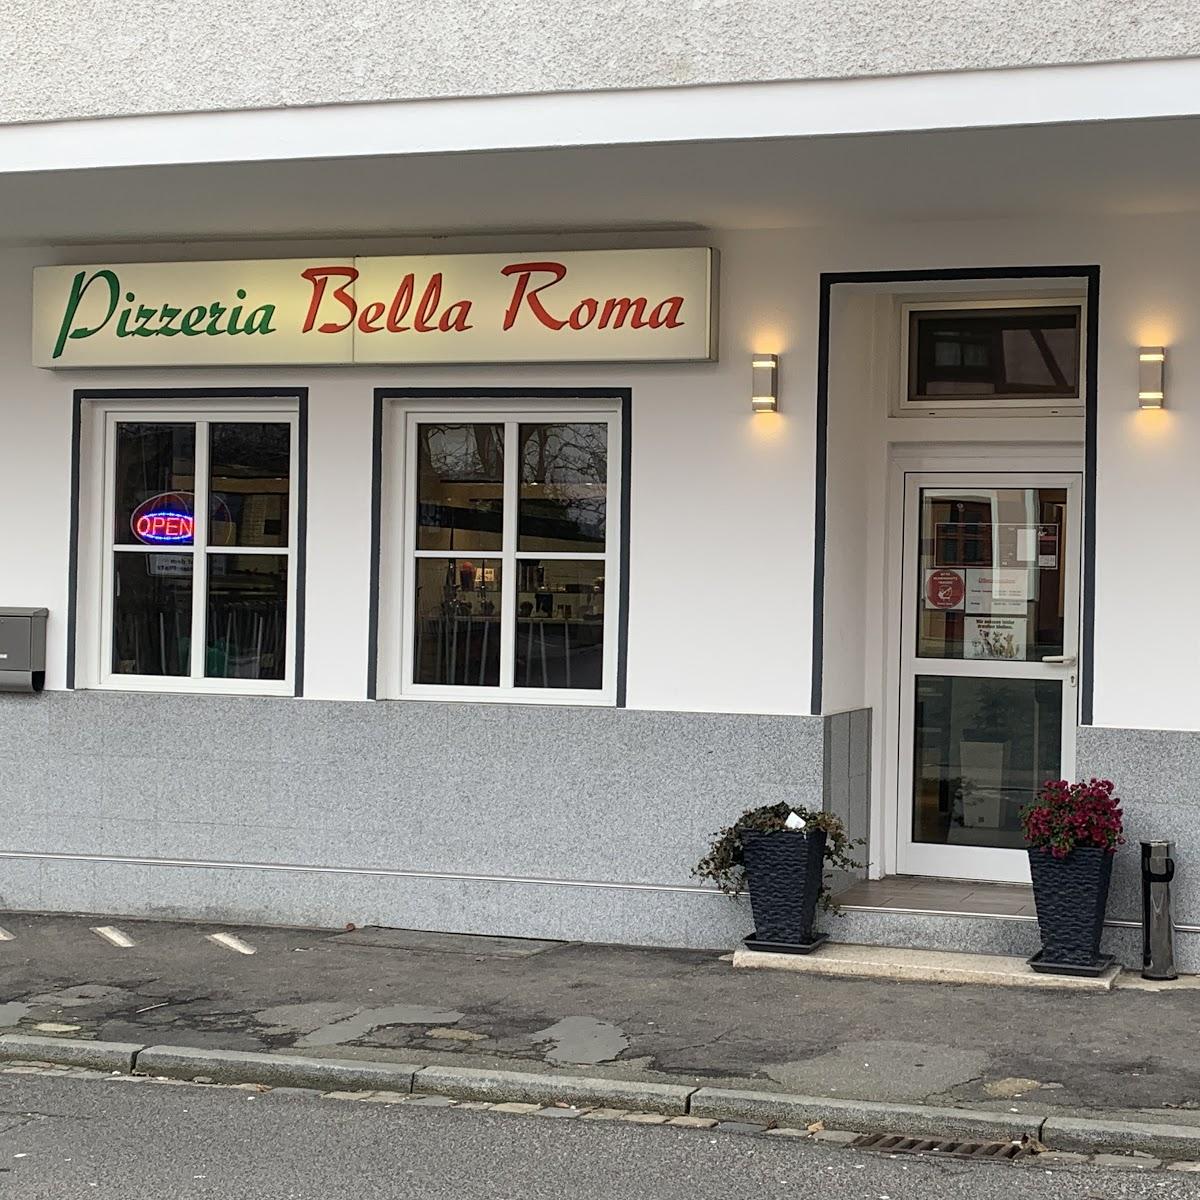 Restaurant "Pizzeria Bella Roma" in  Schnaittach